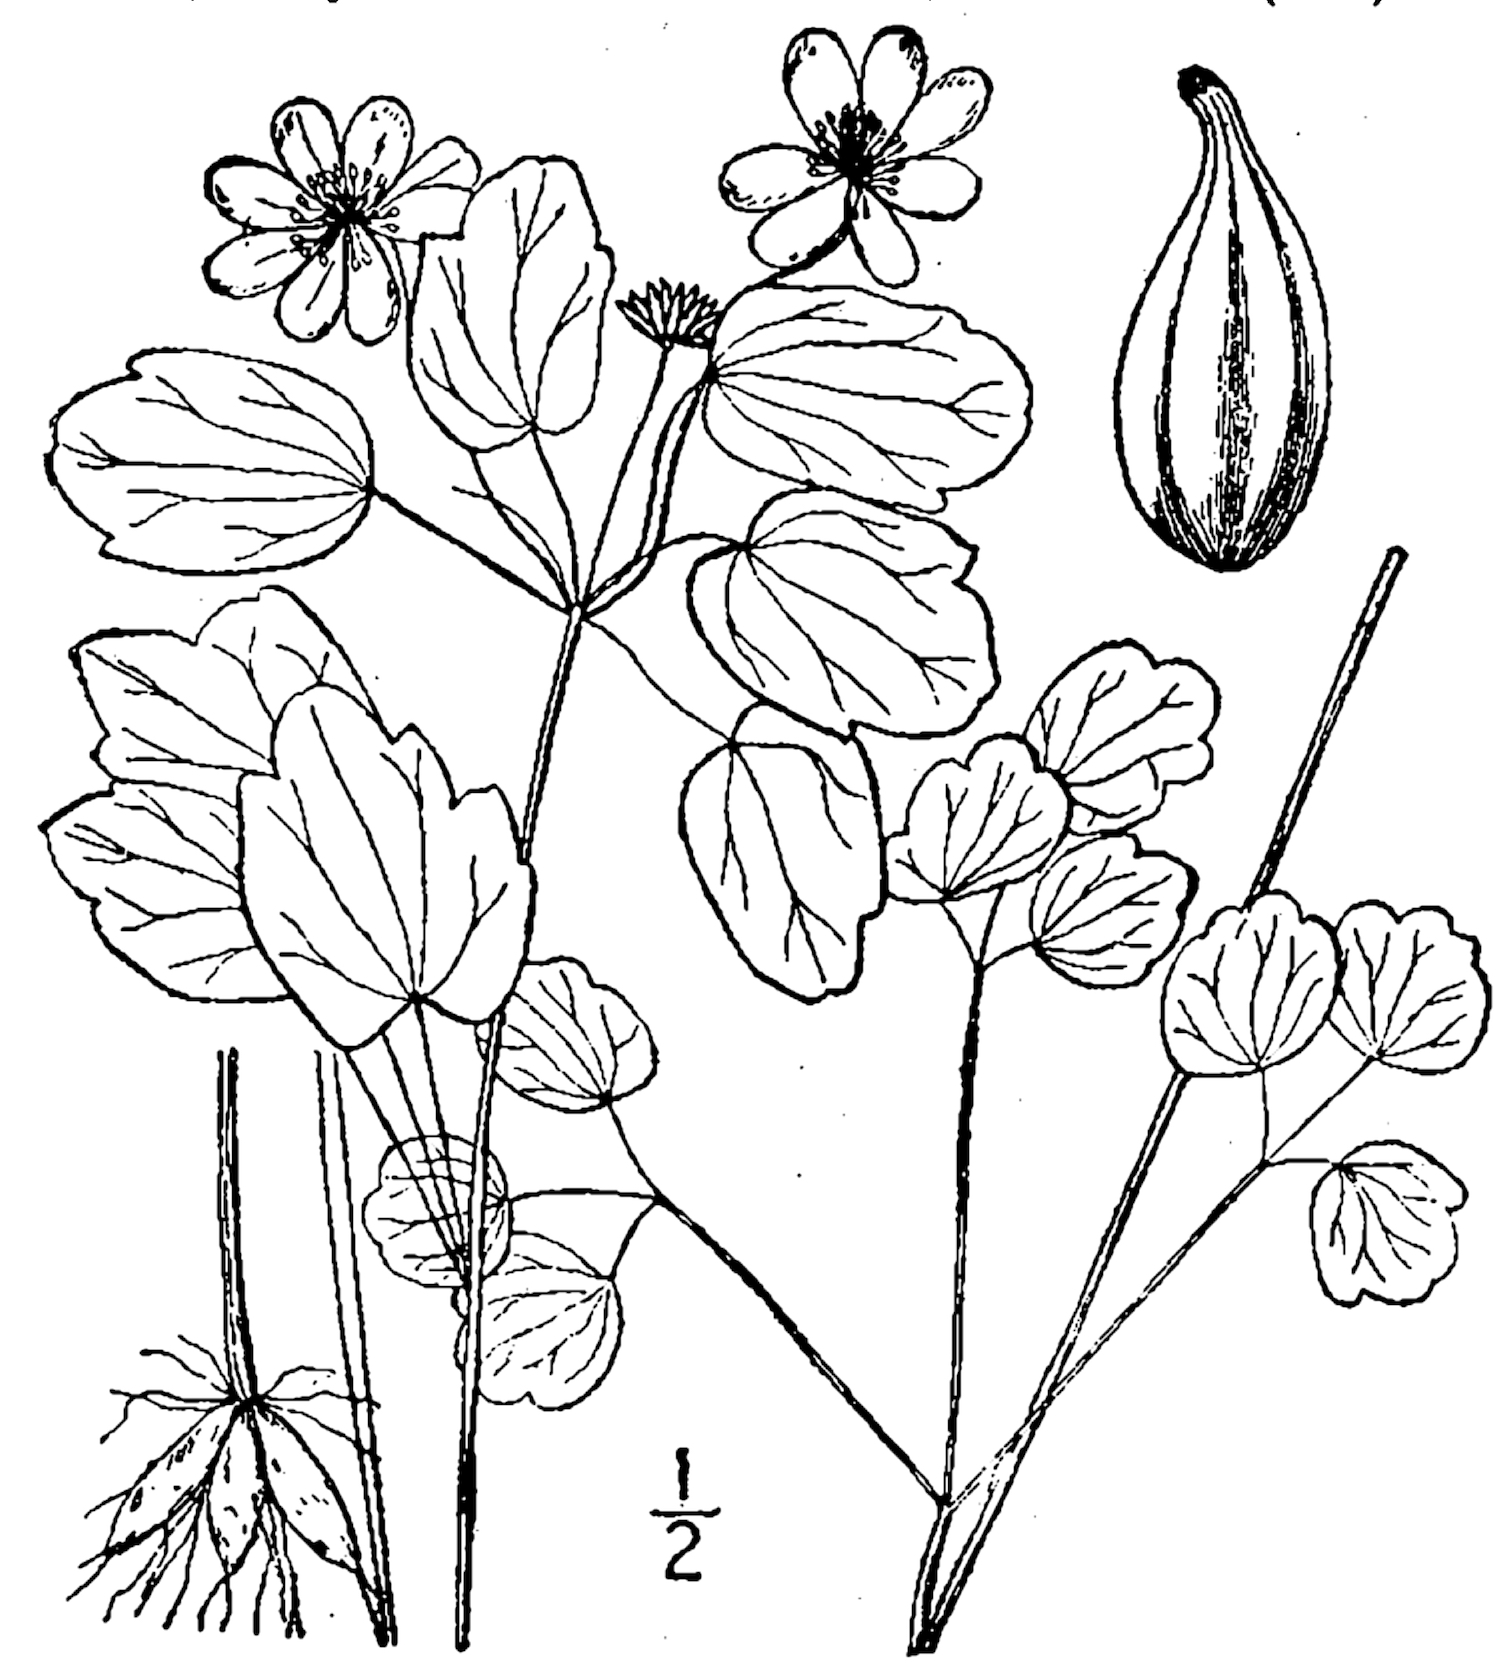 1913 Rue-anemone botanical illustration.